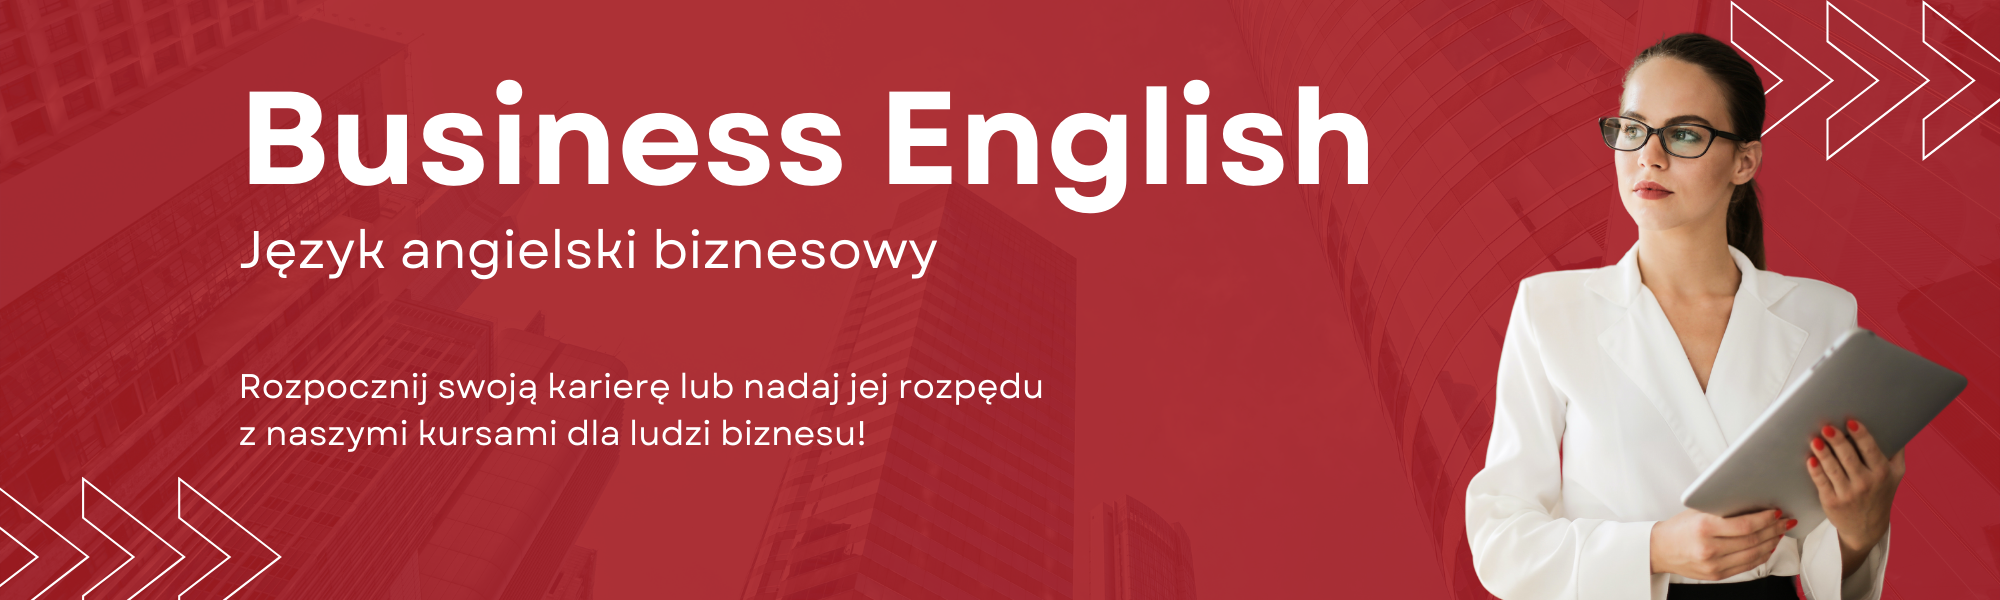 Język angielski biznesowy Business English nauka języka angielskiego i innych języków obcych online w szkole językowej